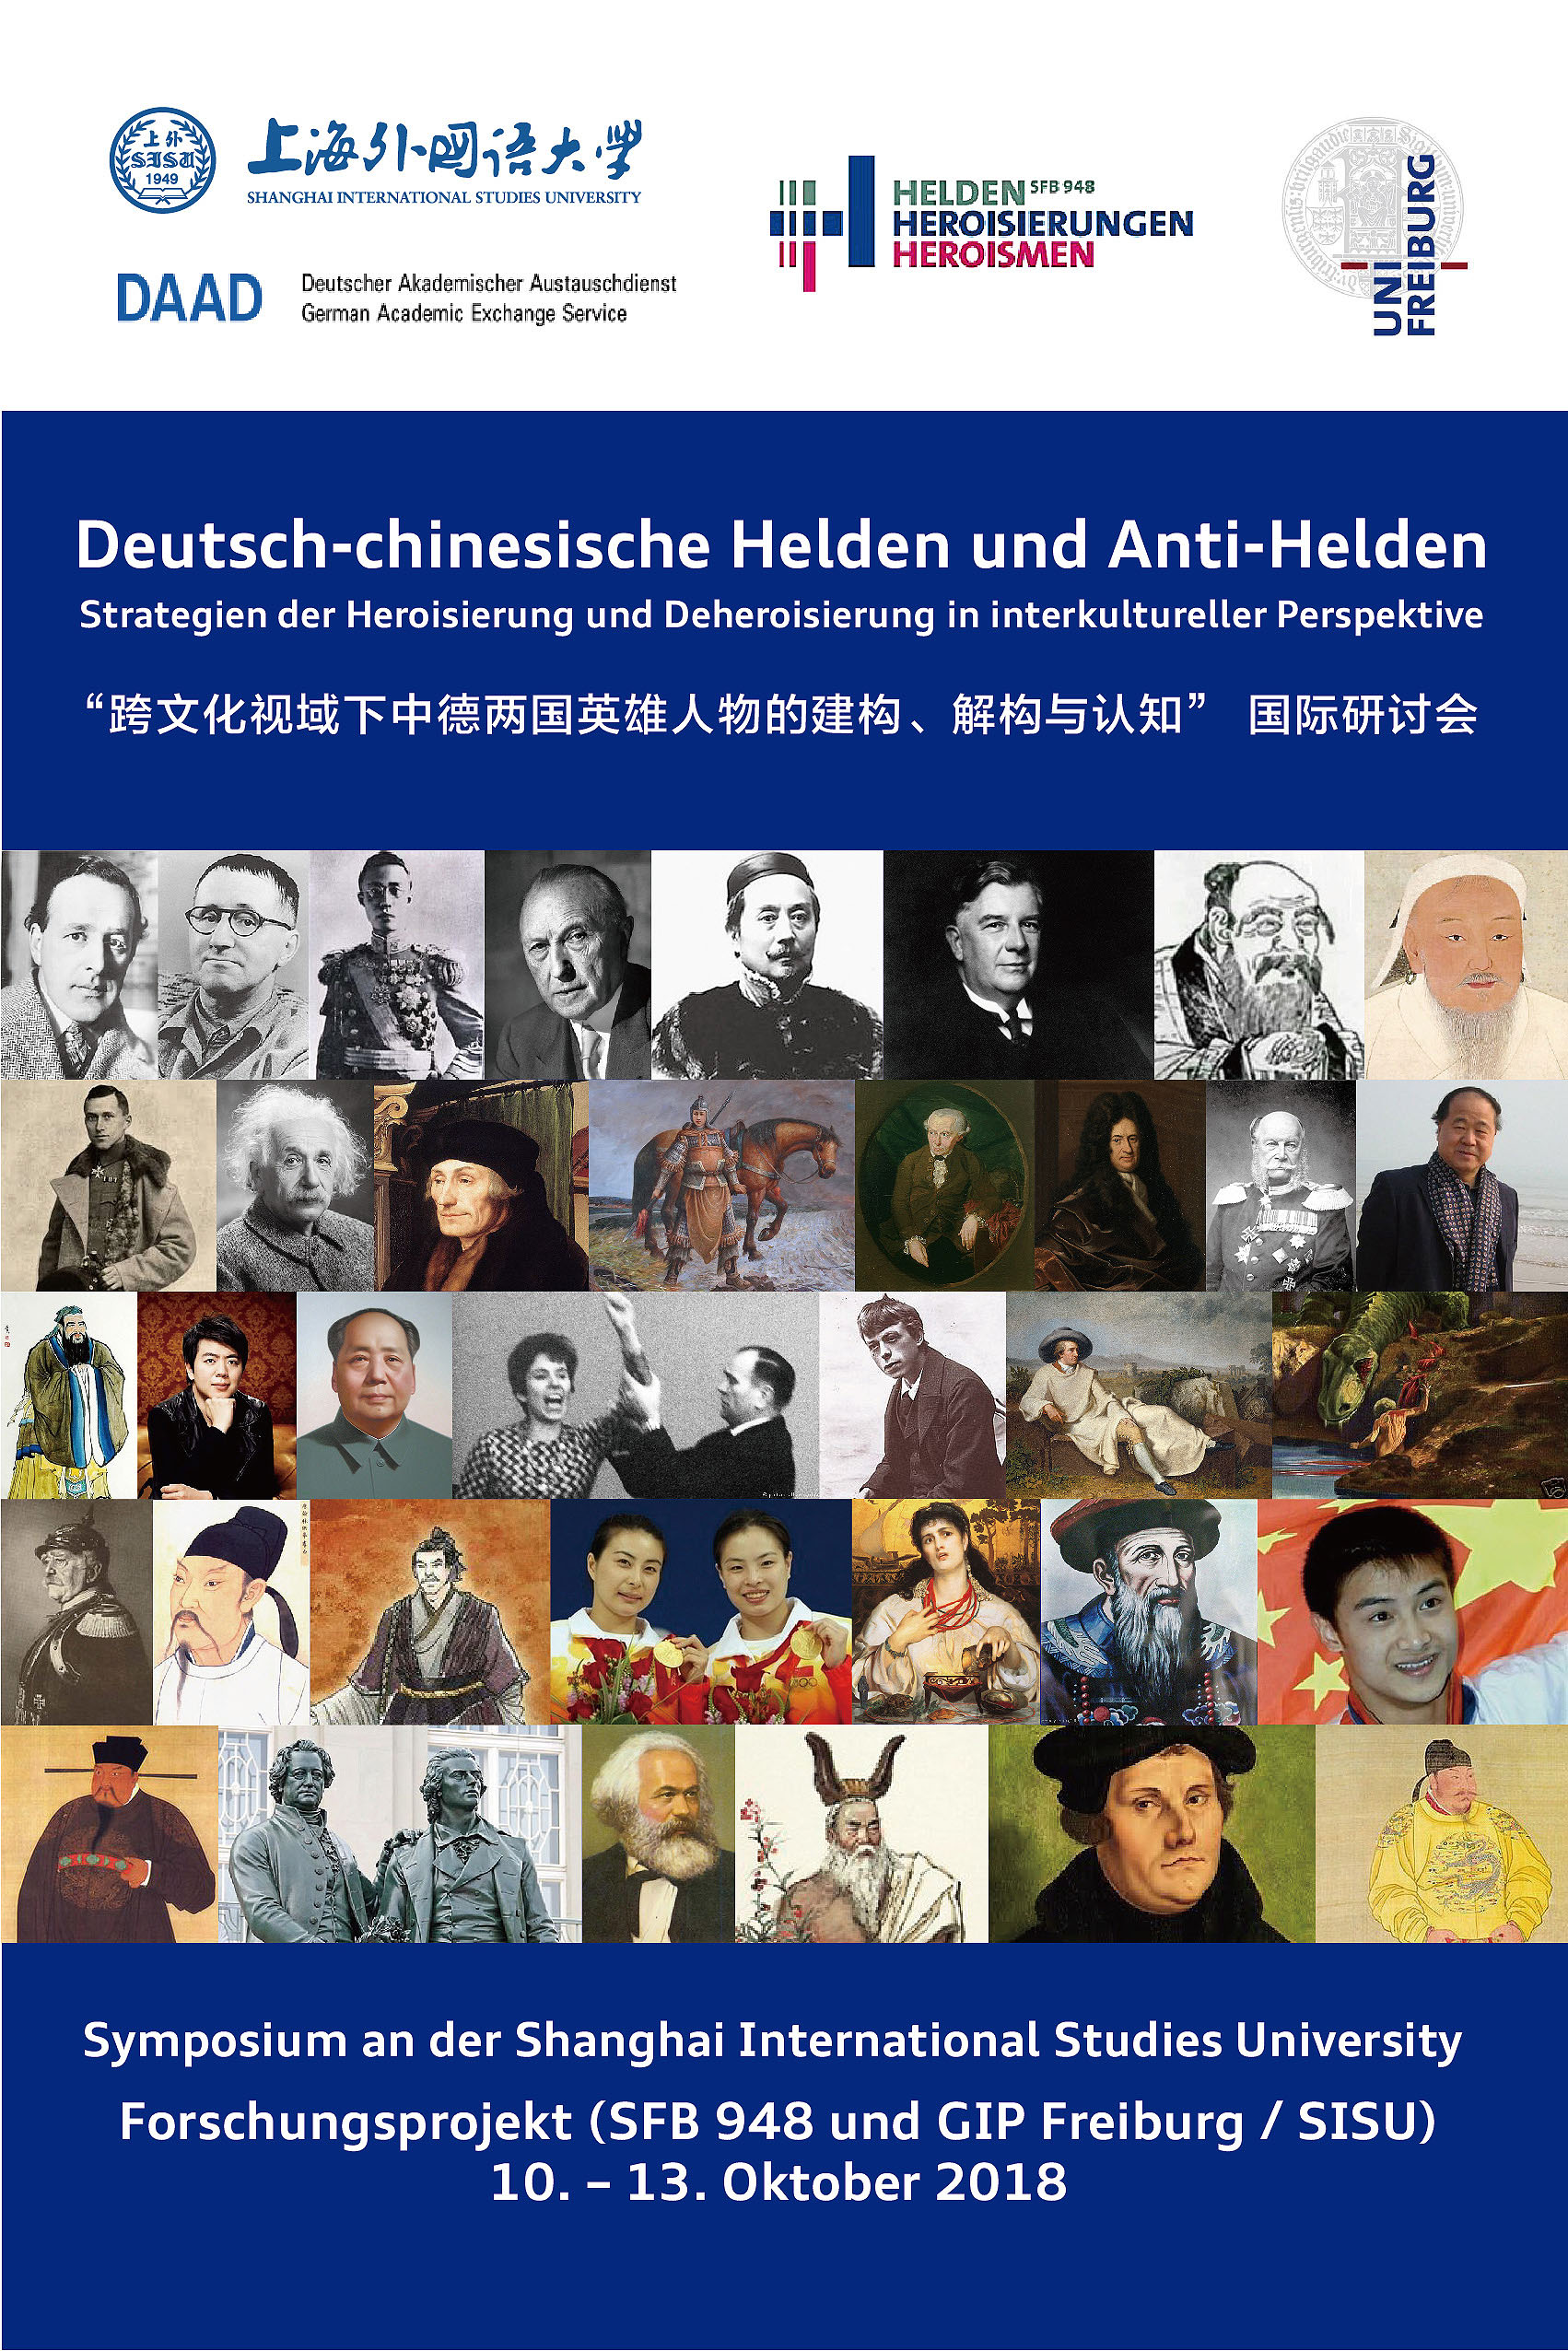 Symposium „Deutsch-chinesische Helden und Anti-Helden“ an der Shanghai International Studies University (SISU)